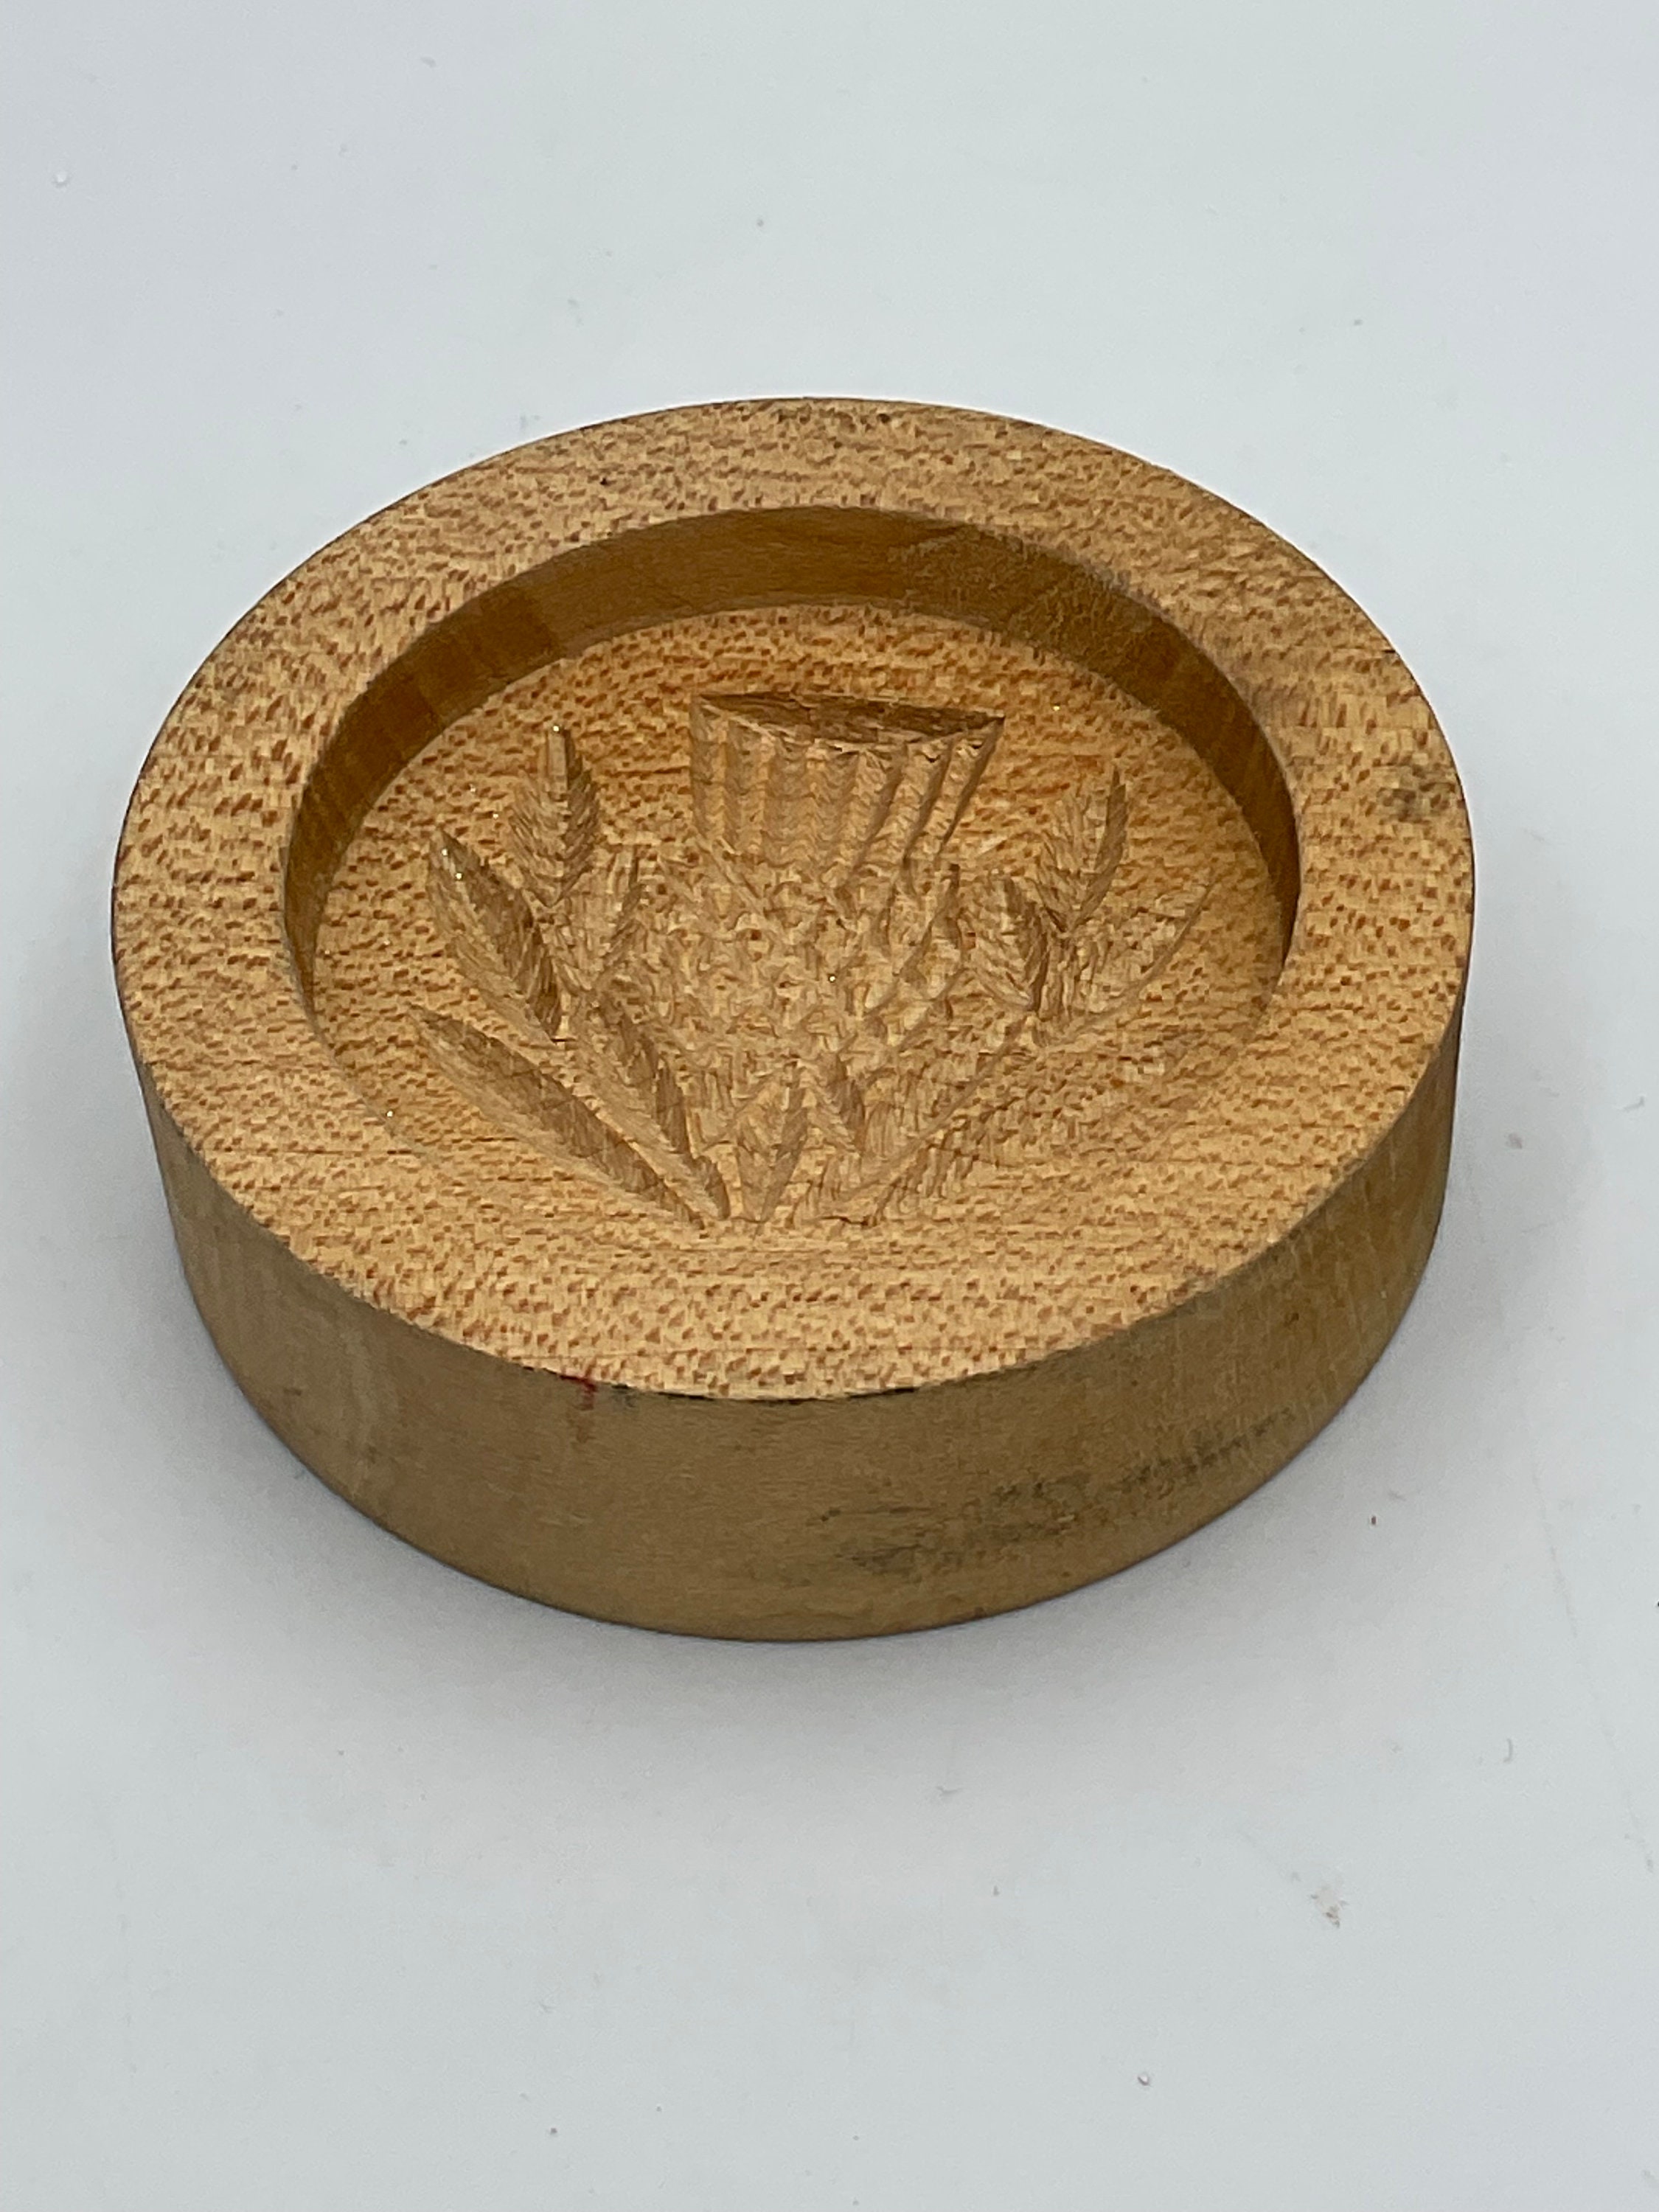 Thistle Ceramic Shortbread Pan